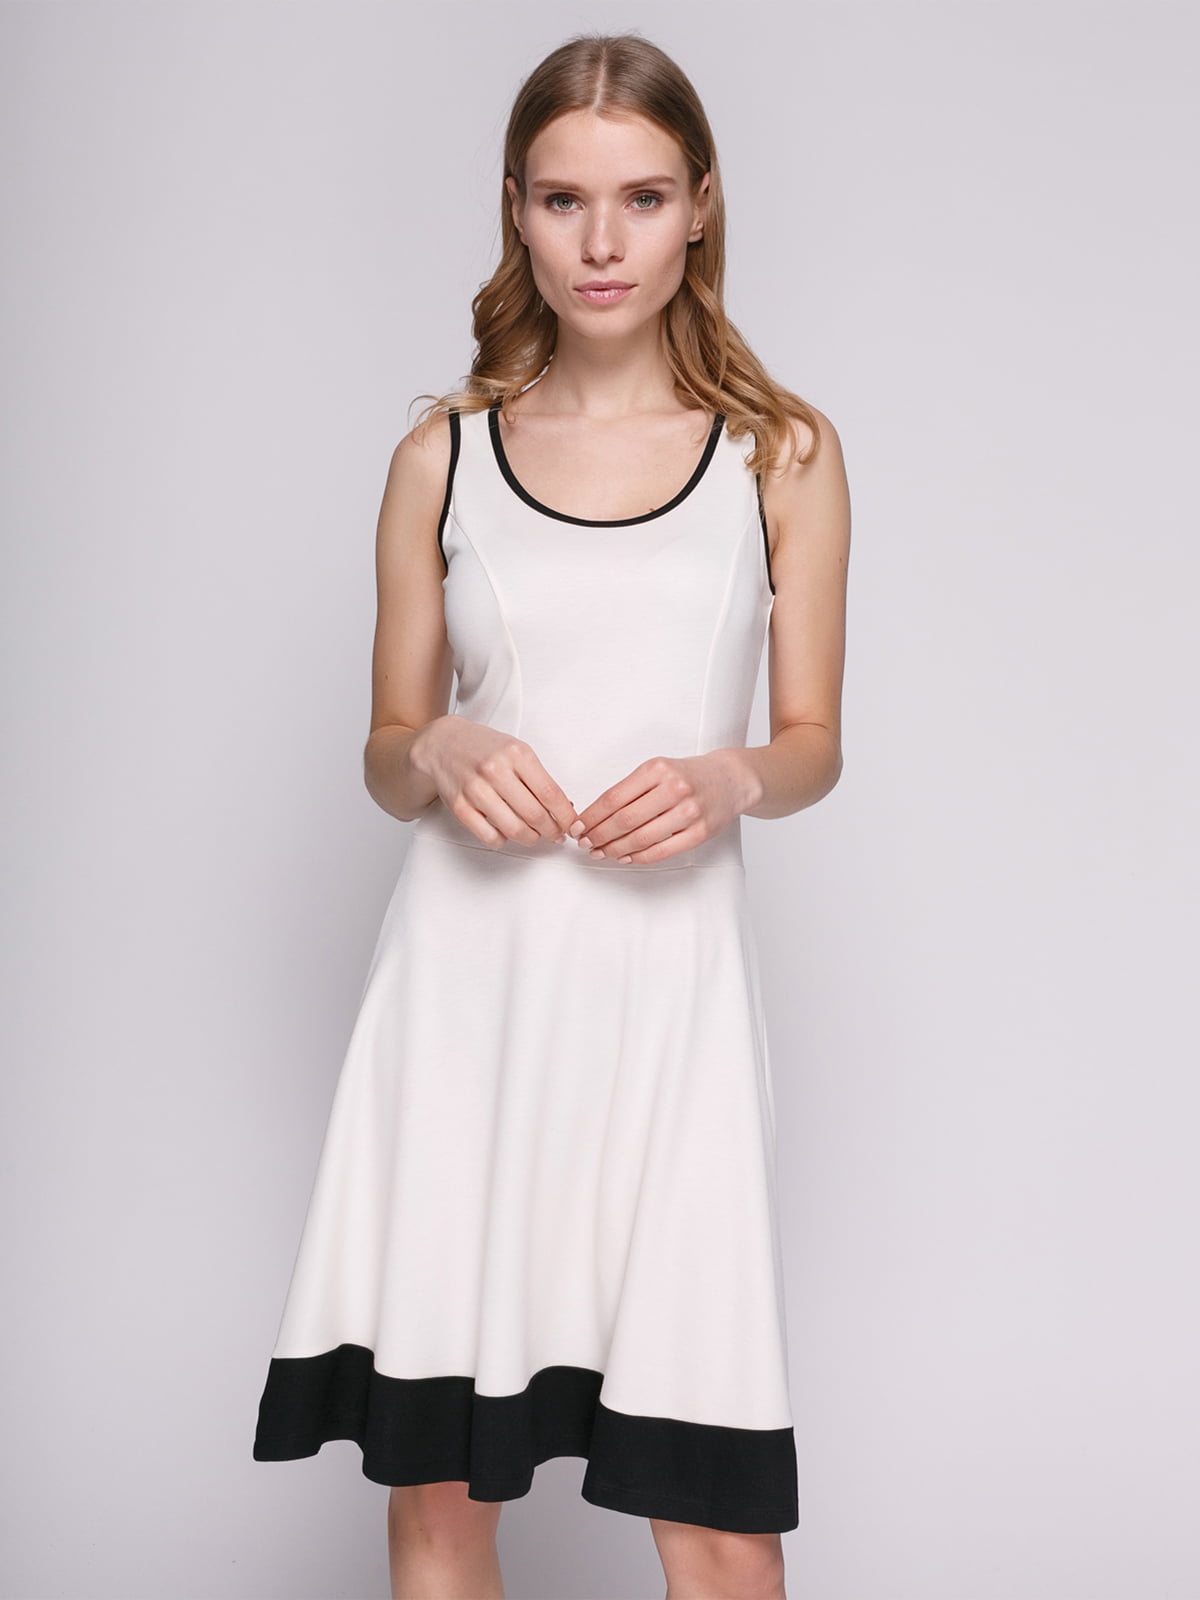 Платье белое с отделкой черного цвета | 692169